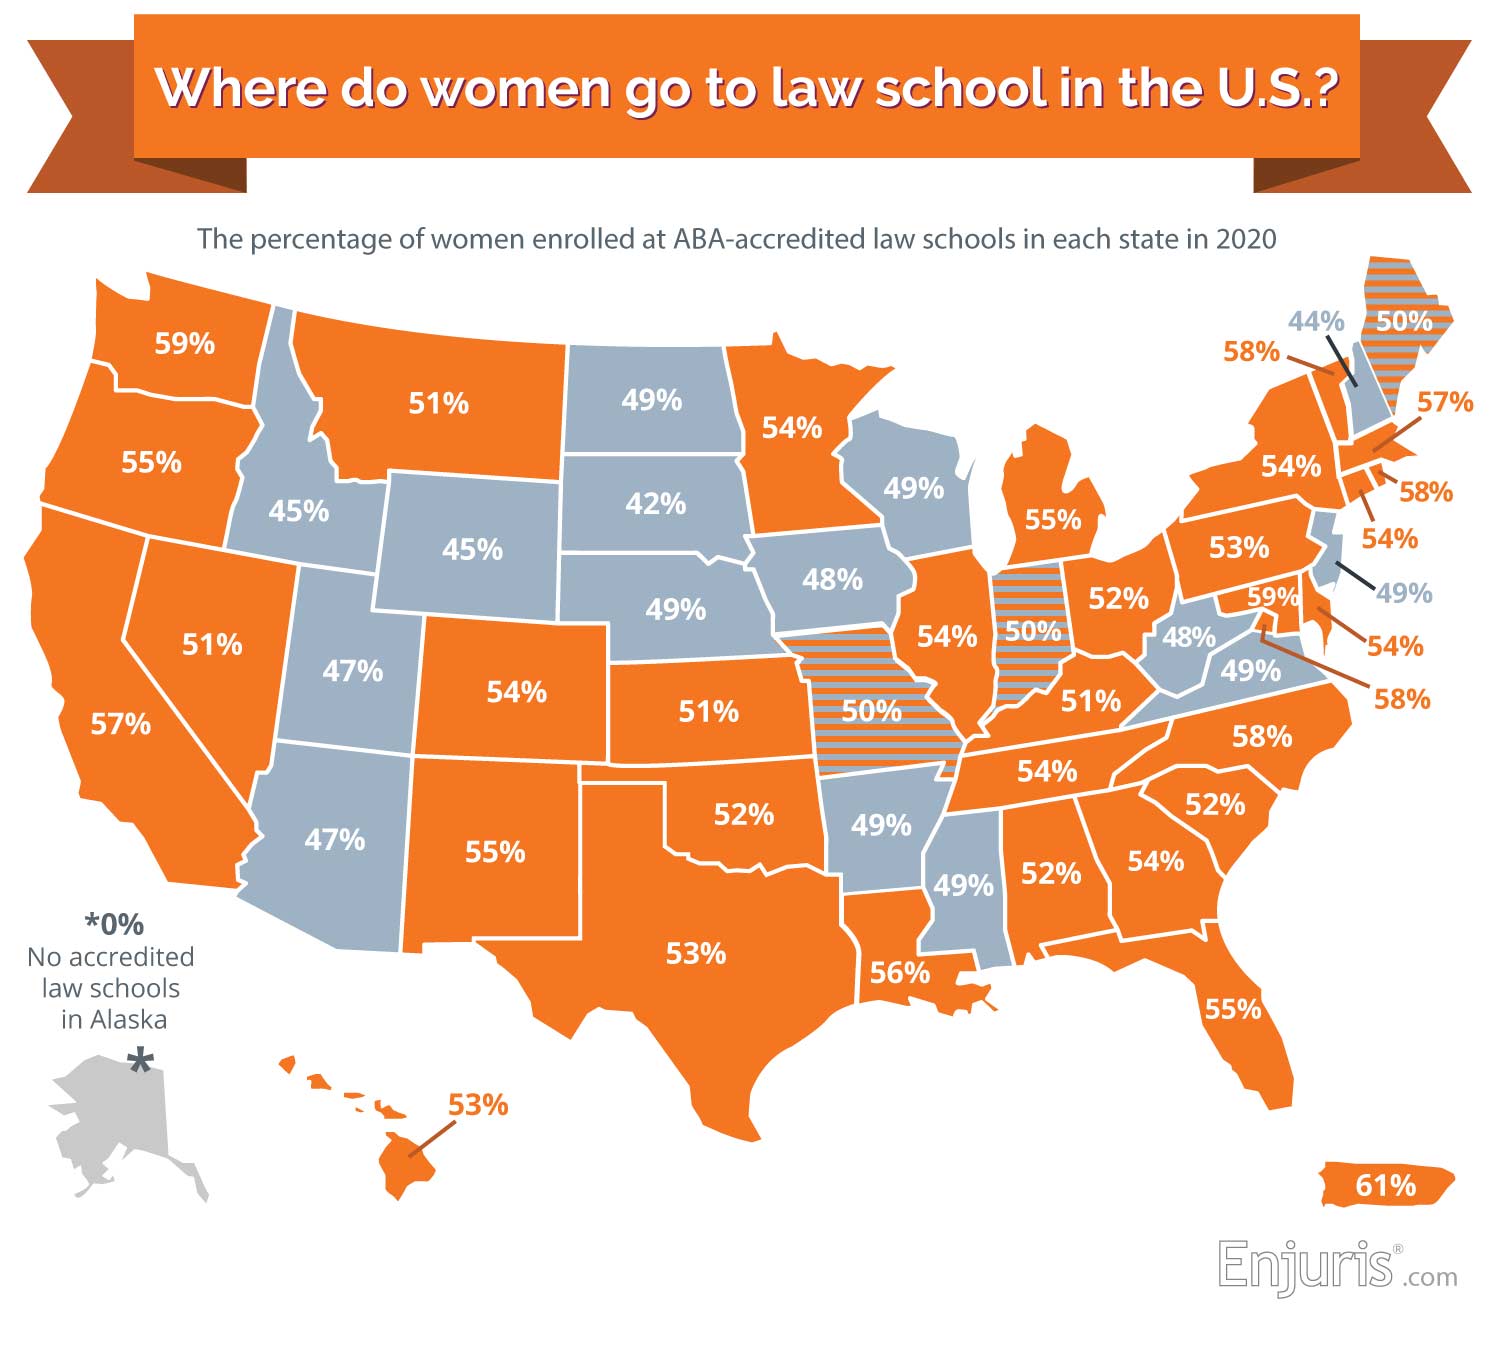 law-school-map-gender-ratio-2020